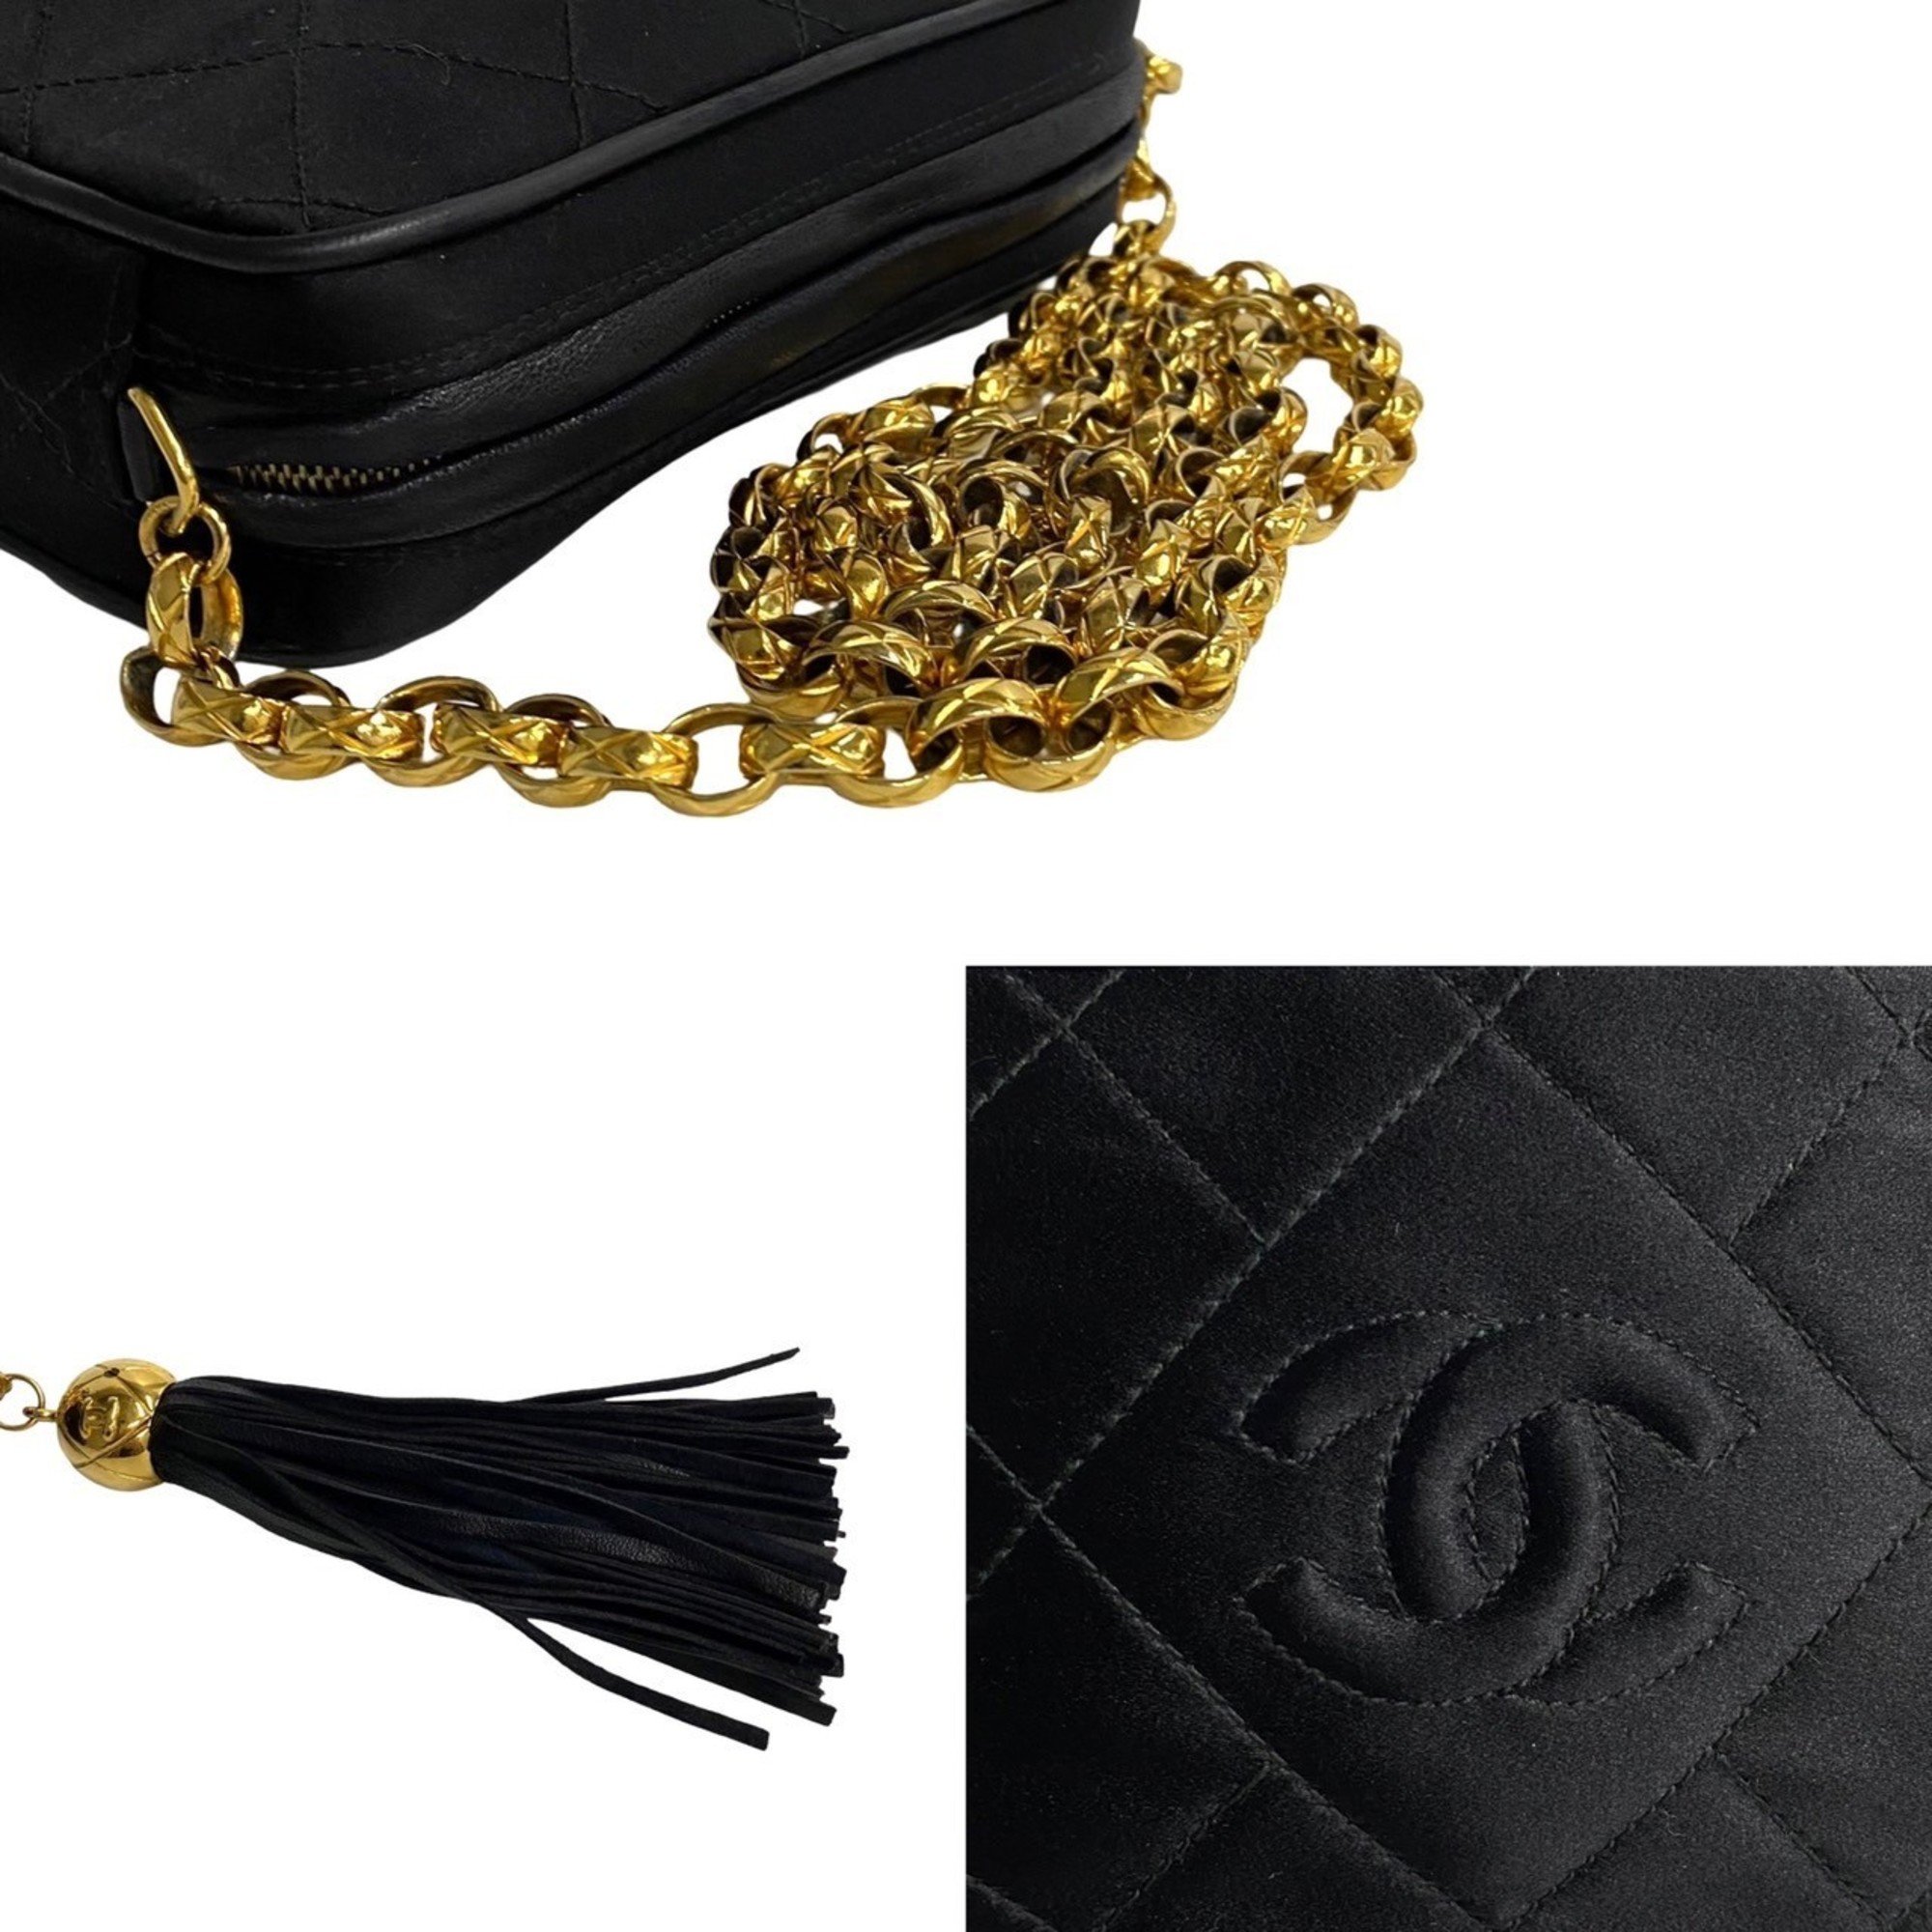 CHANEL Matelasse Satin Leather Chain Shoulder Bag Black 13017